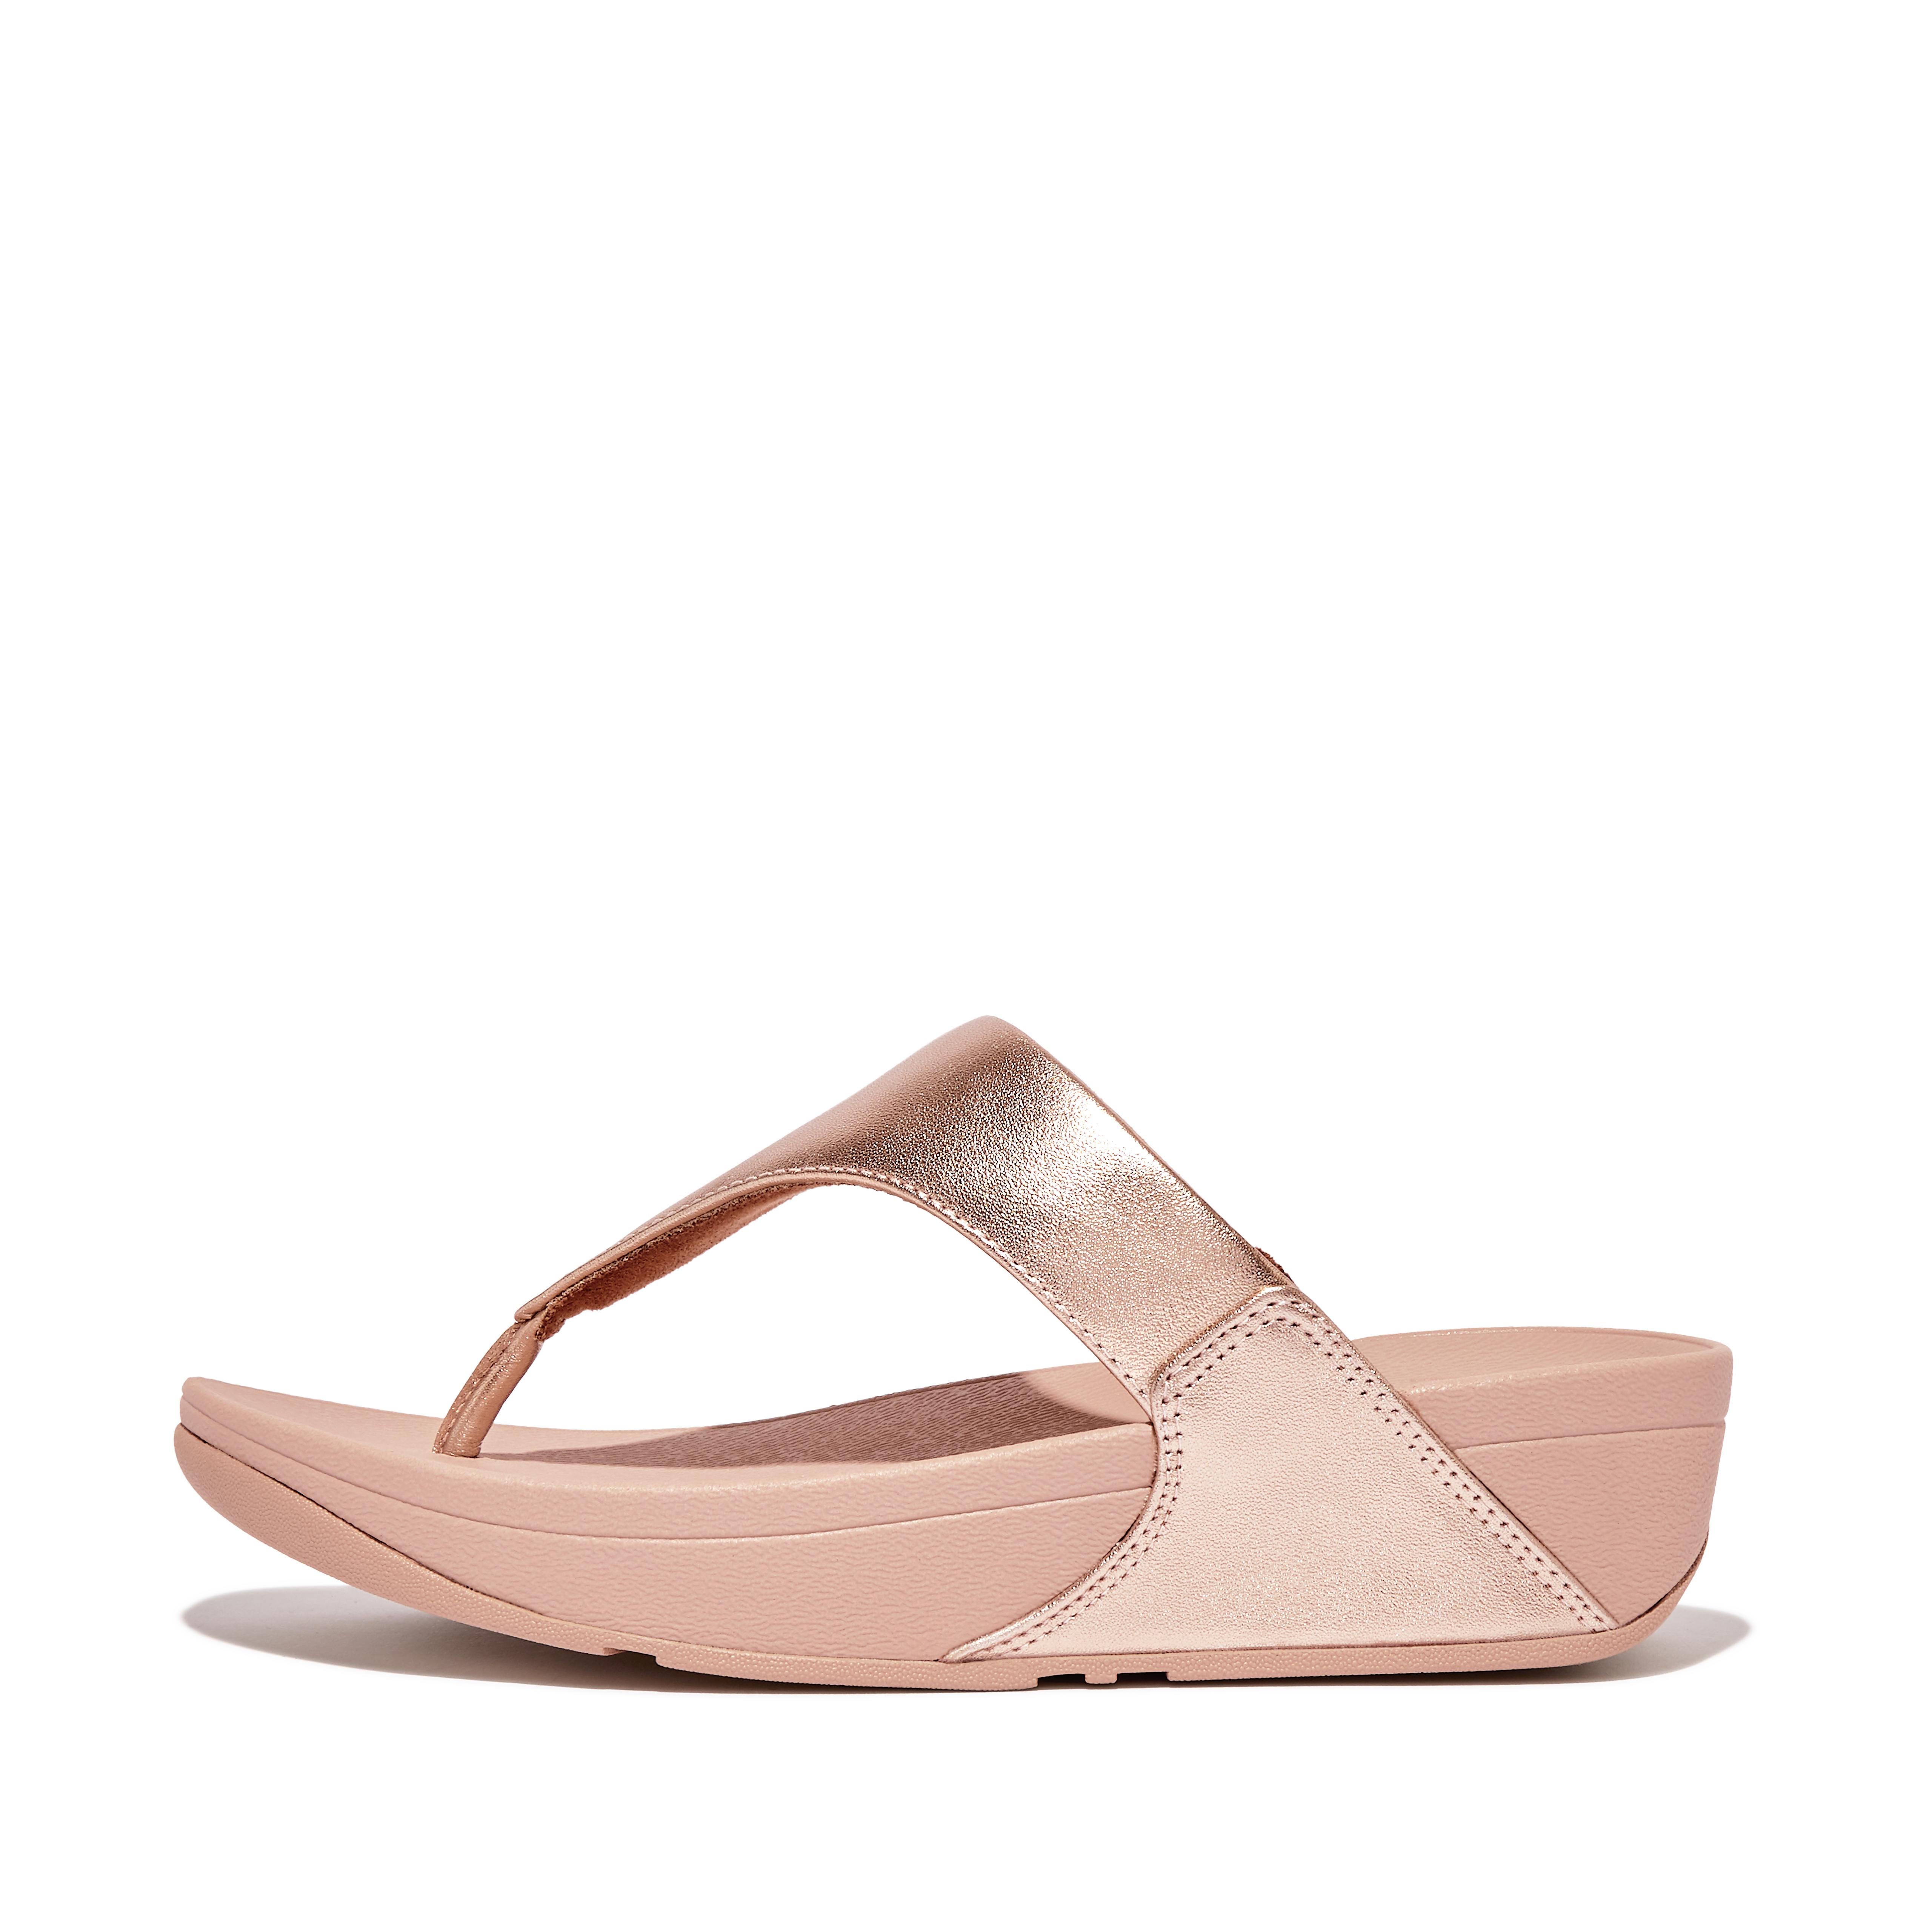 핏플랍 샌들 FitFlop LULU Leather Toe-Post Sandals Microwobbleboard Standard,Rose Gold